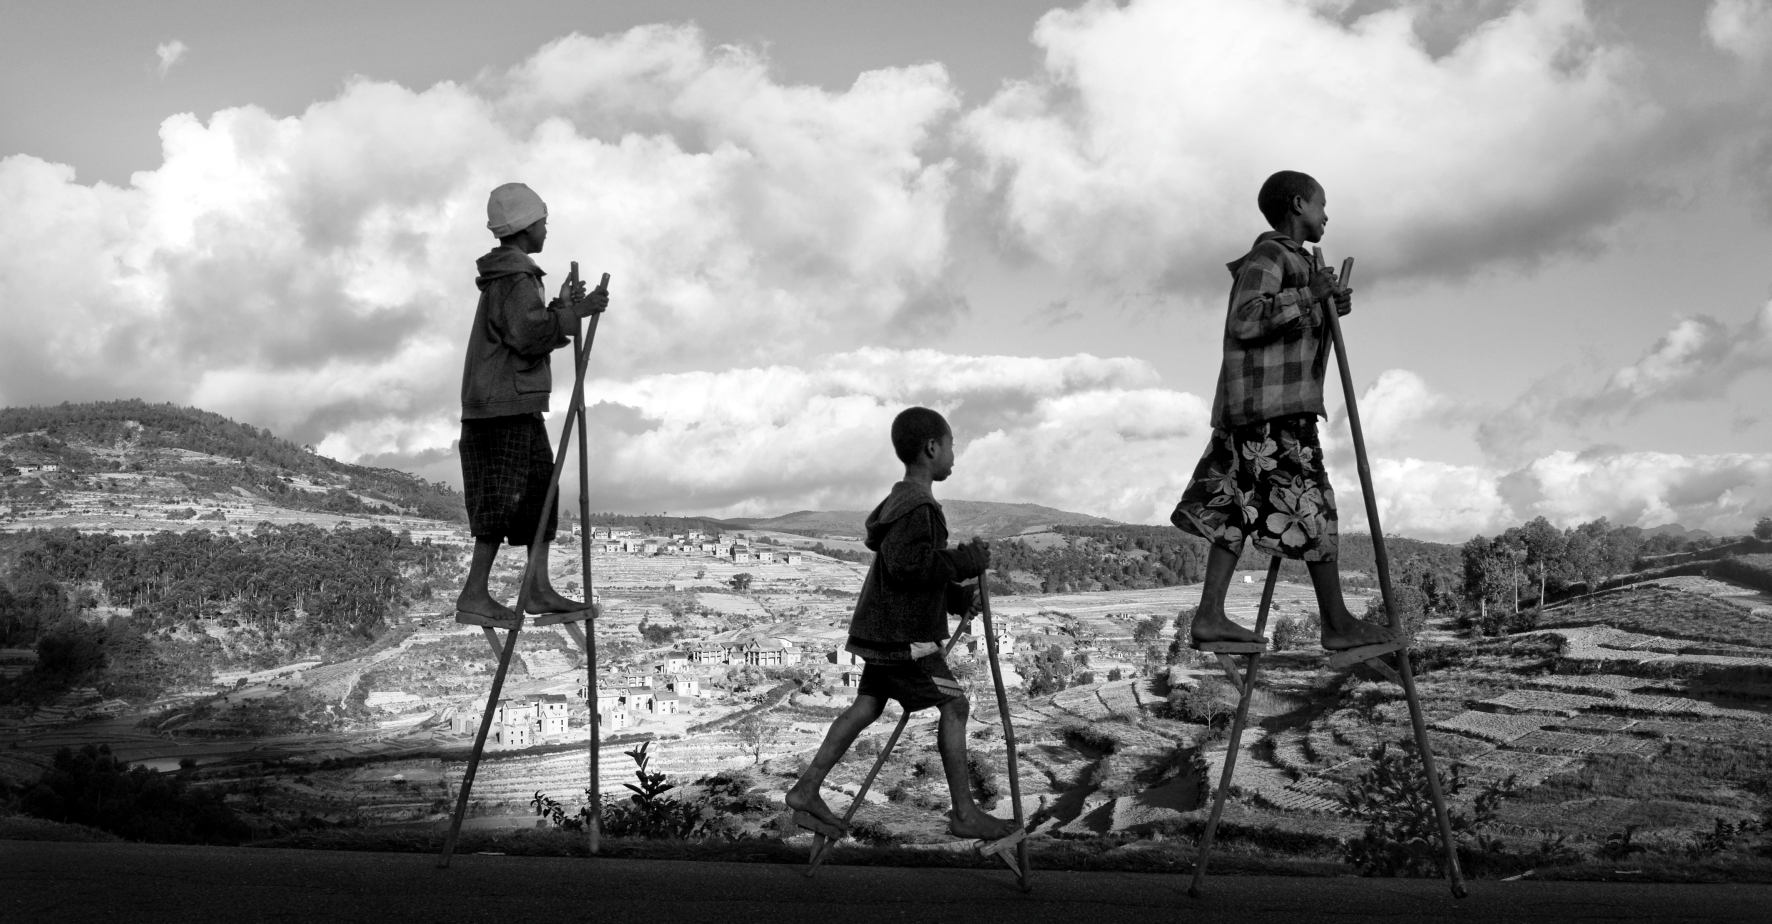 Des enfants de Madagascar, gardiens de zébus, sur des échasses